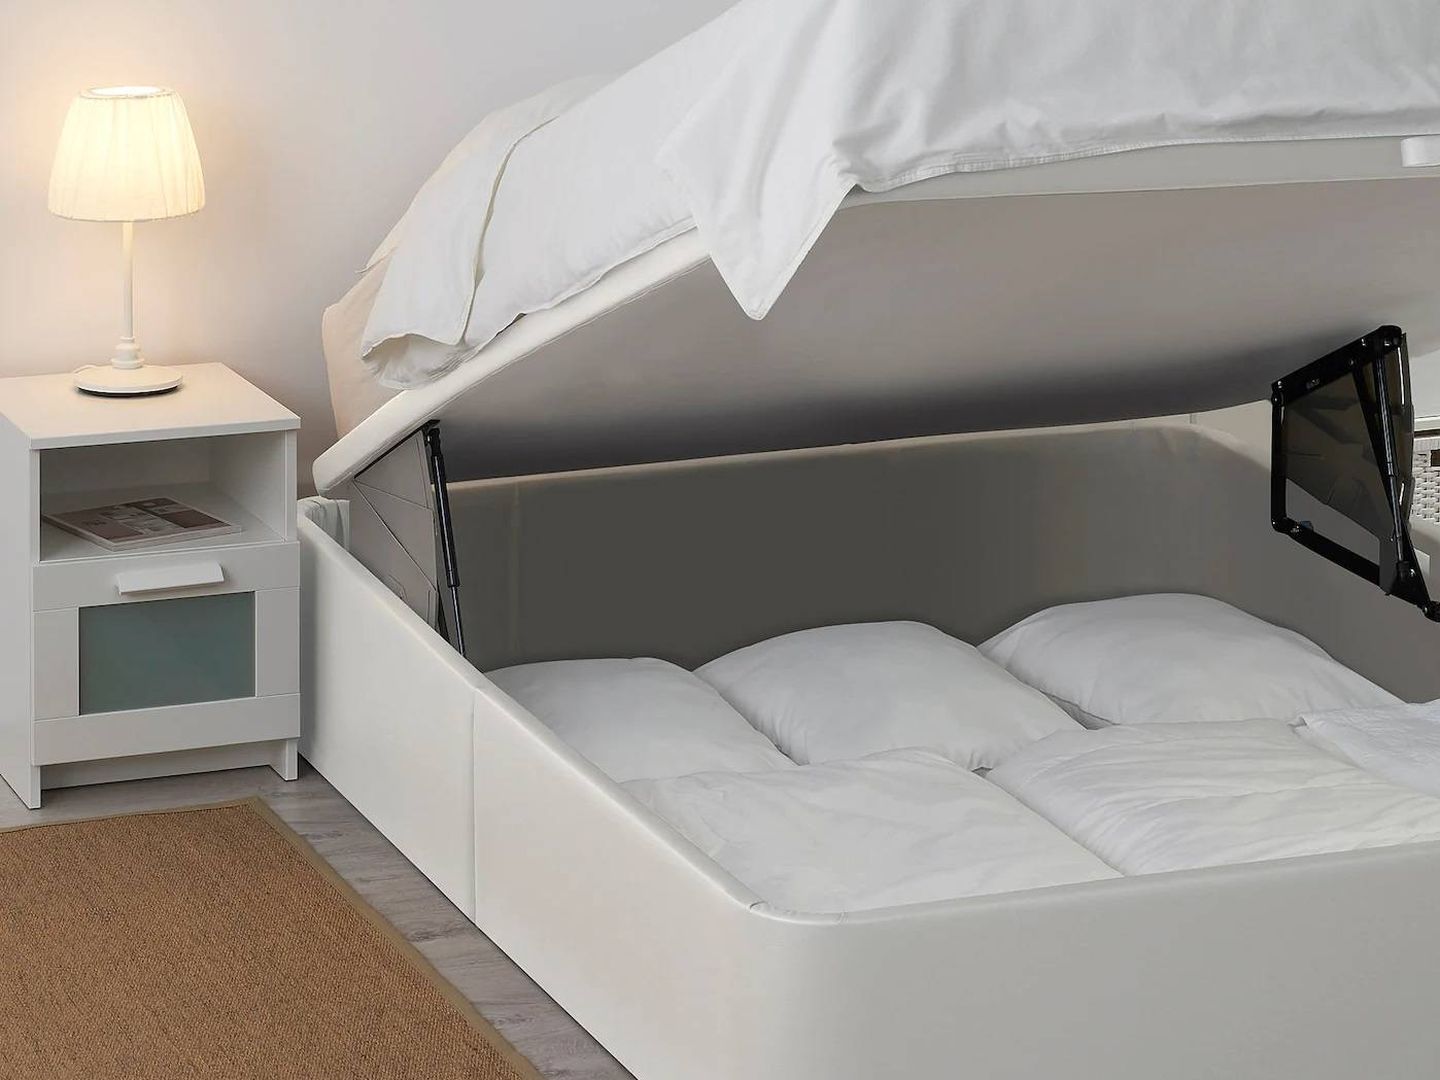 Camas de Ikea para dormitorios pequeños y ordenados. (Cortesía)